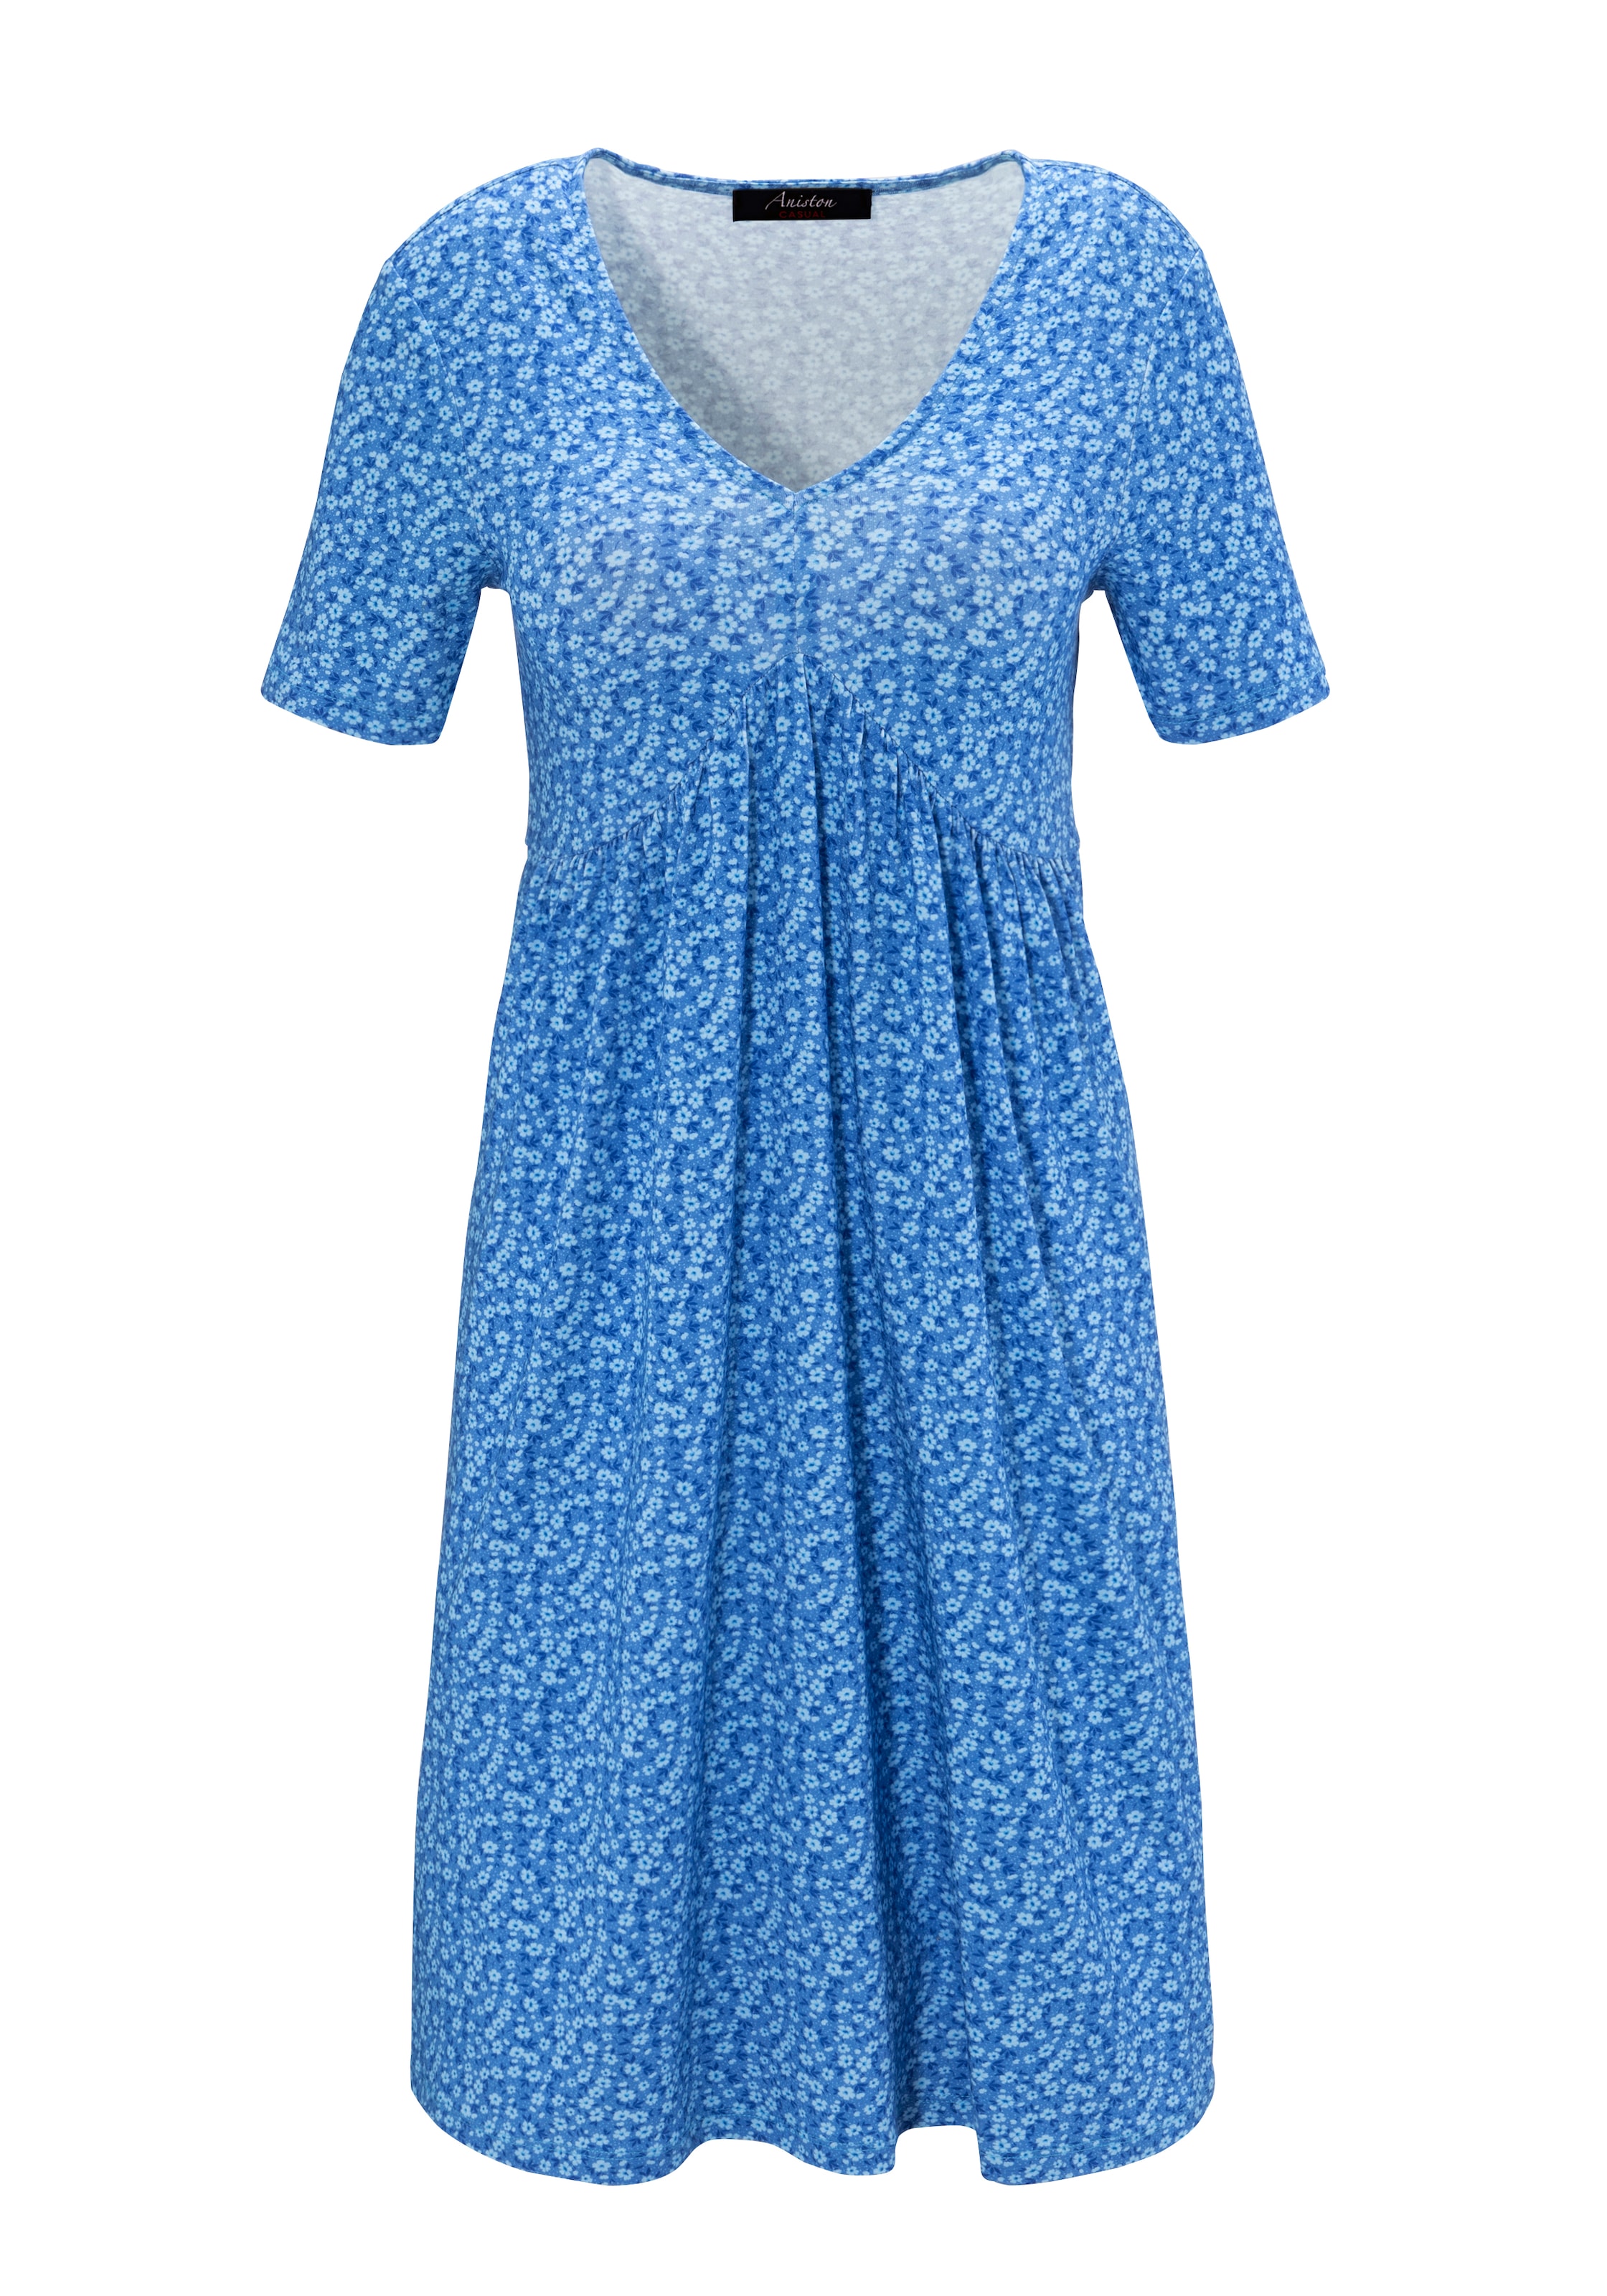 Aniston CASUAL Sommerkleid, mit verspielten Millefleurs-Druck - NEUE KOLLEKTION